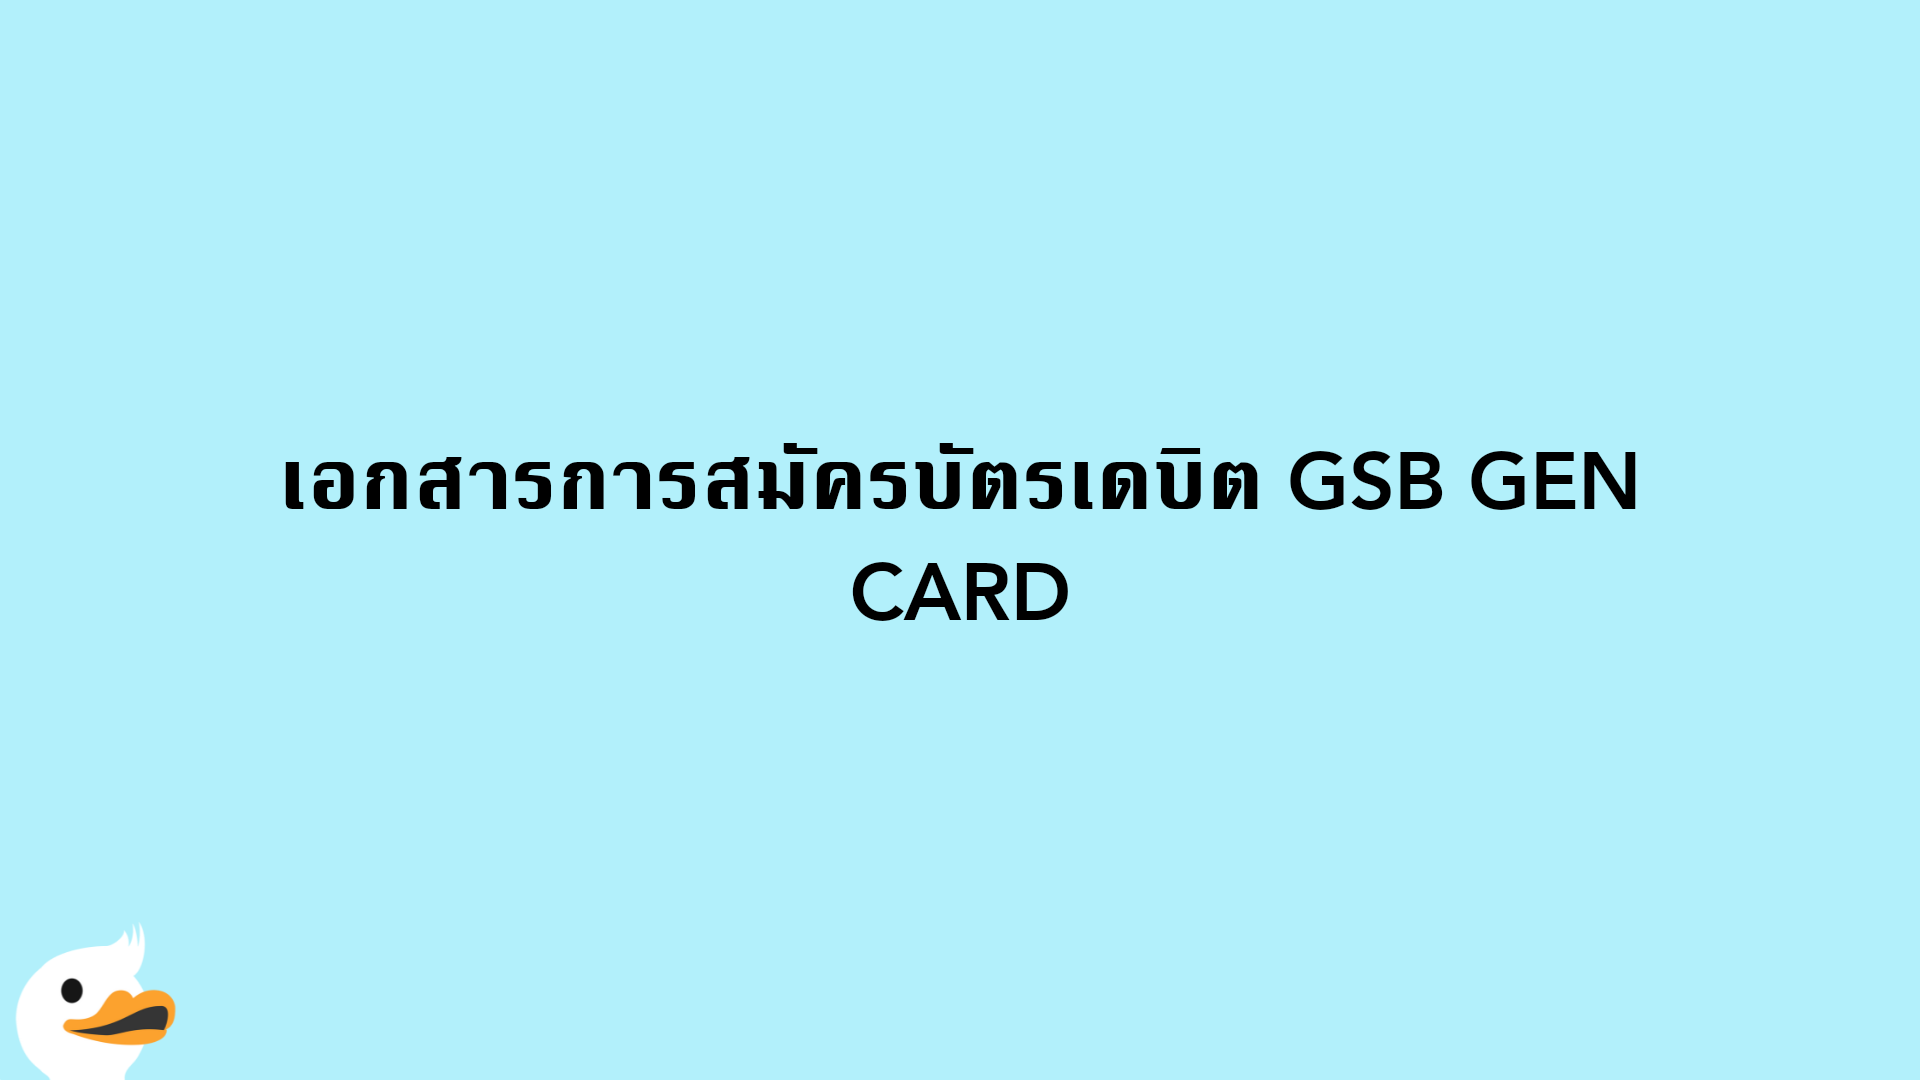 เอกสารการสมัครบัตรเดบิต GSB GEN CARD